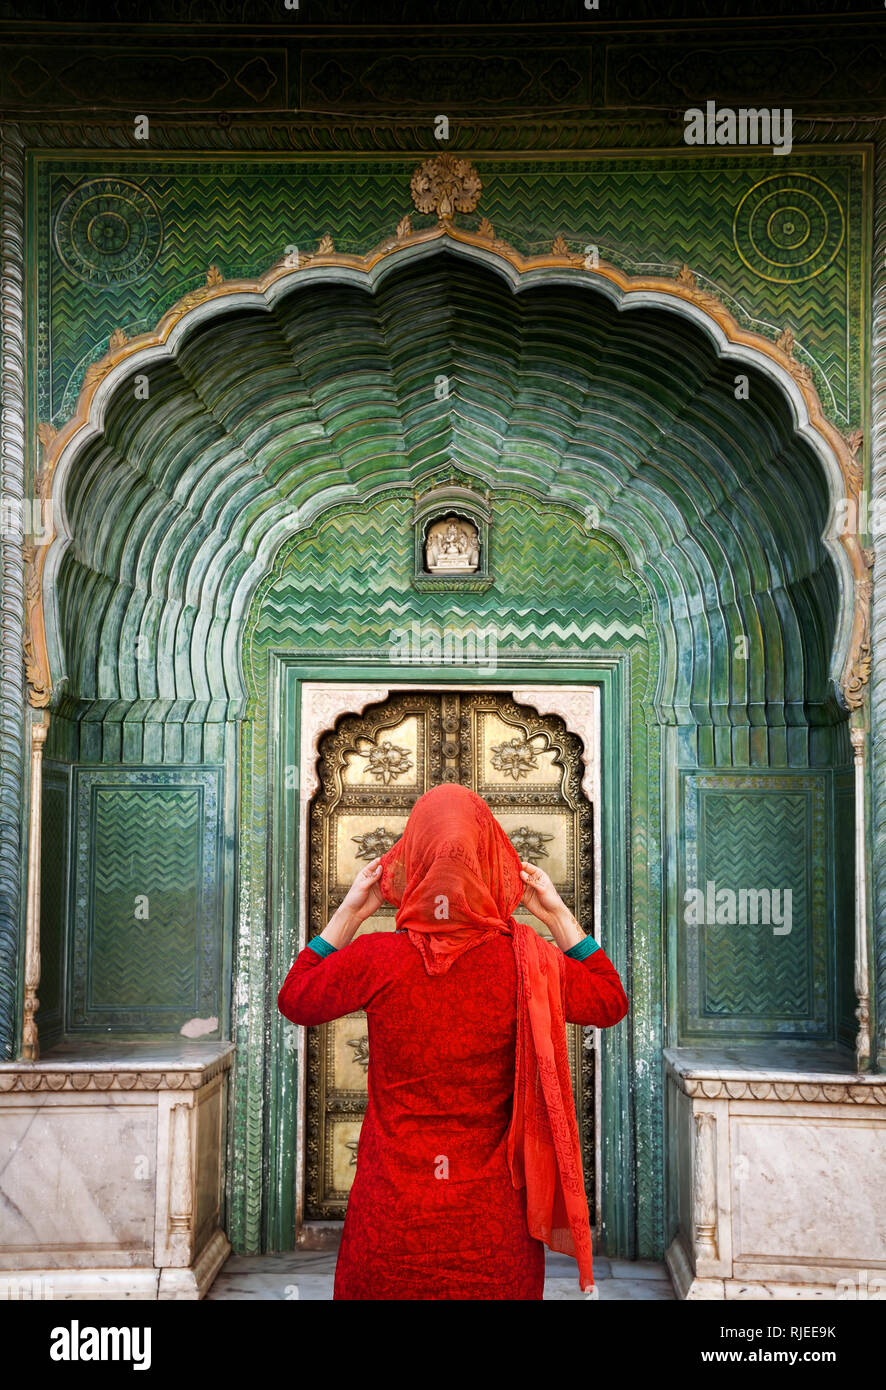 Mujer india en el pañuelo rojo mirando a puerta puerta verde en el Palacio de la ciudad de Jaipur, Rajasthan, India. Espacio para el texto, puede ser utilizado como libro o revista Foto de stock